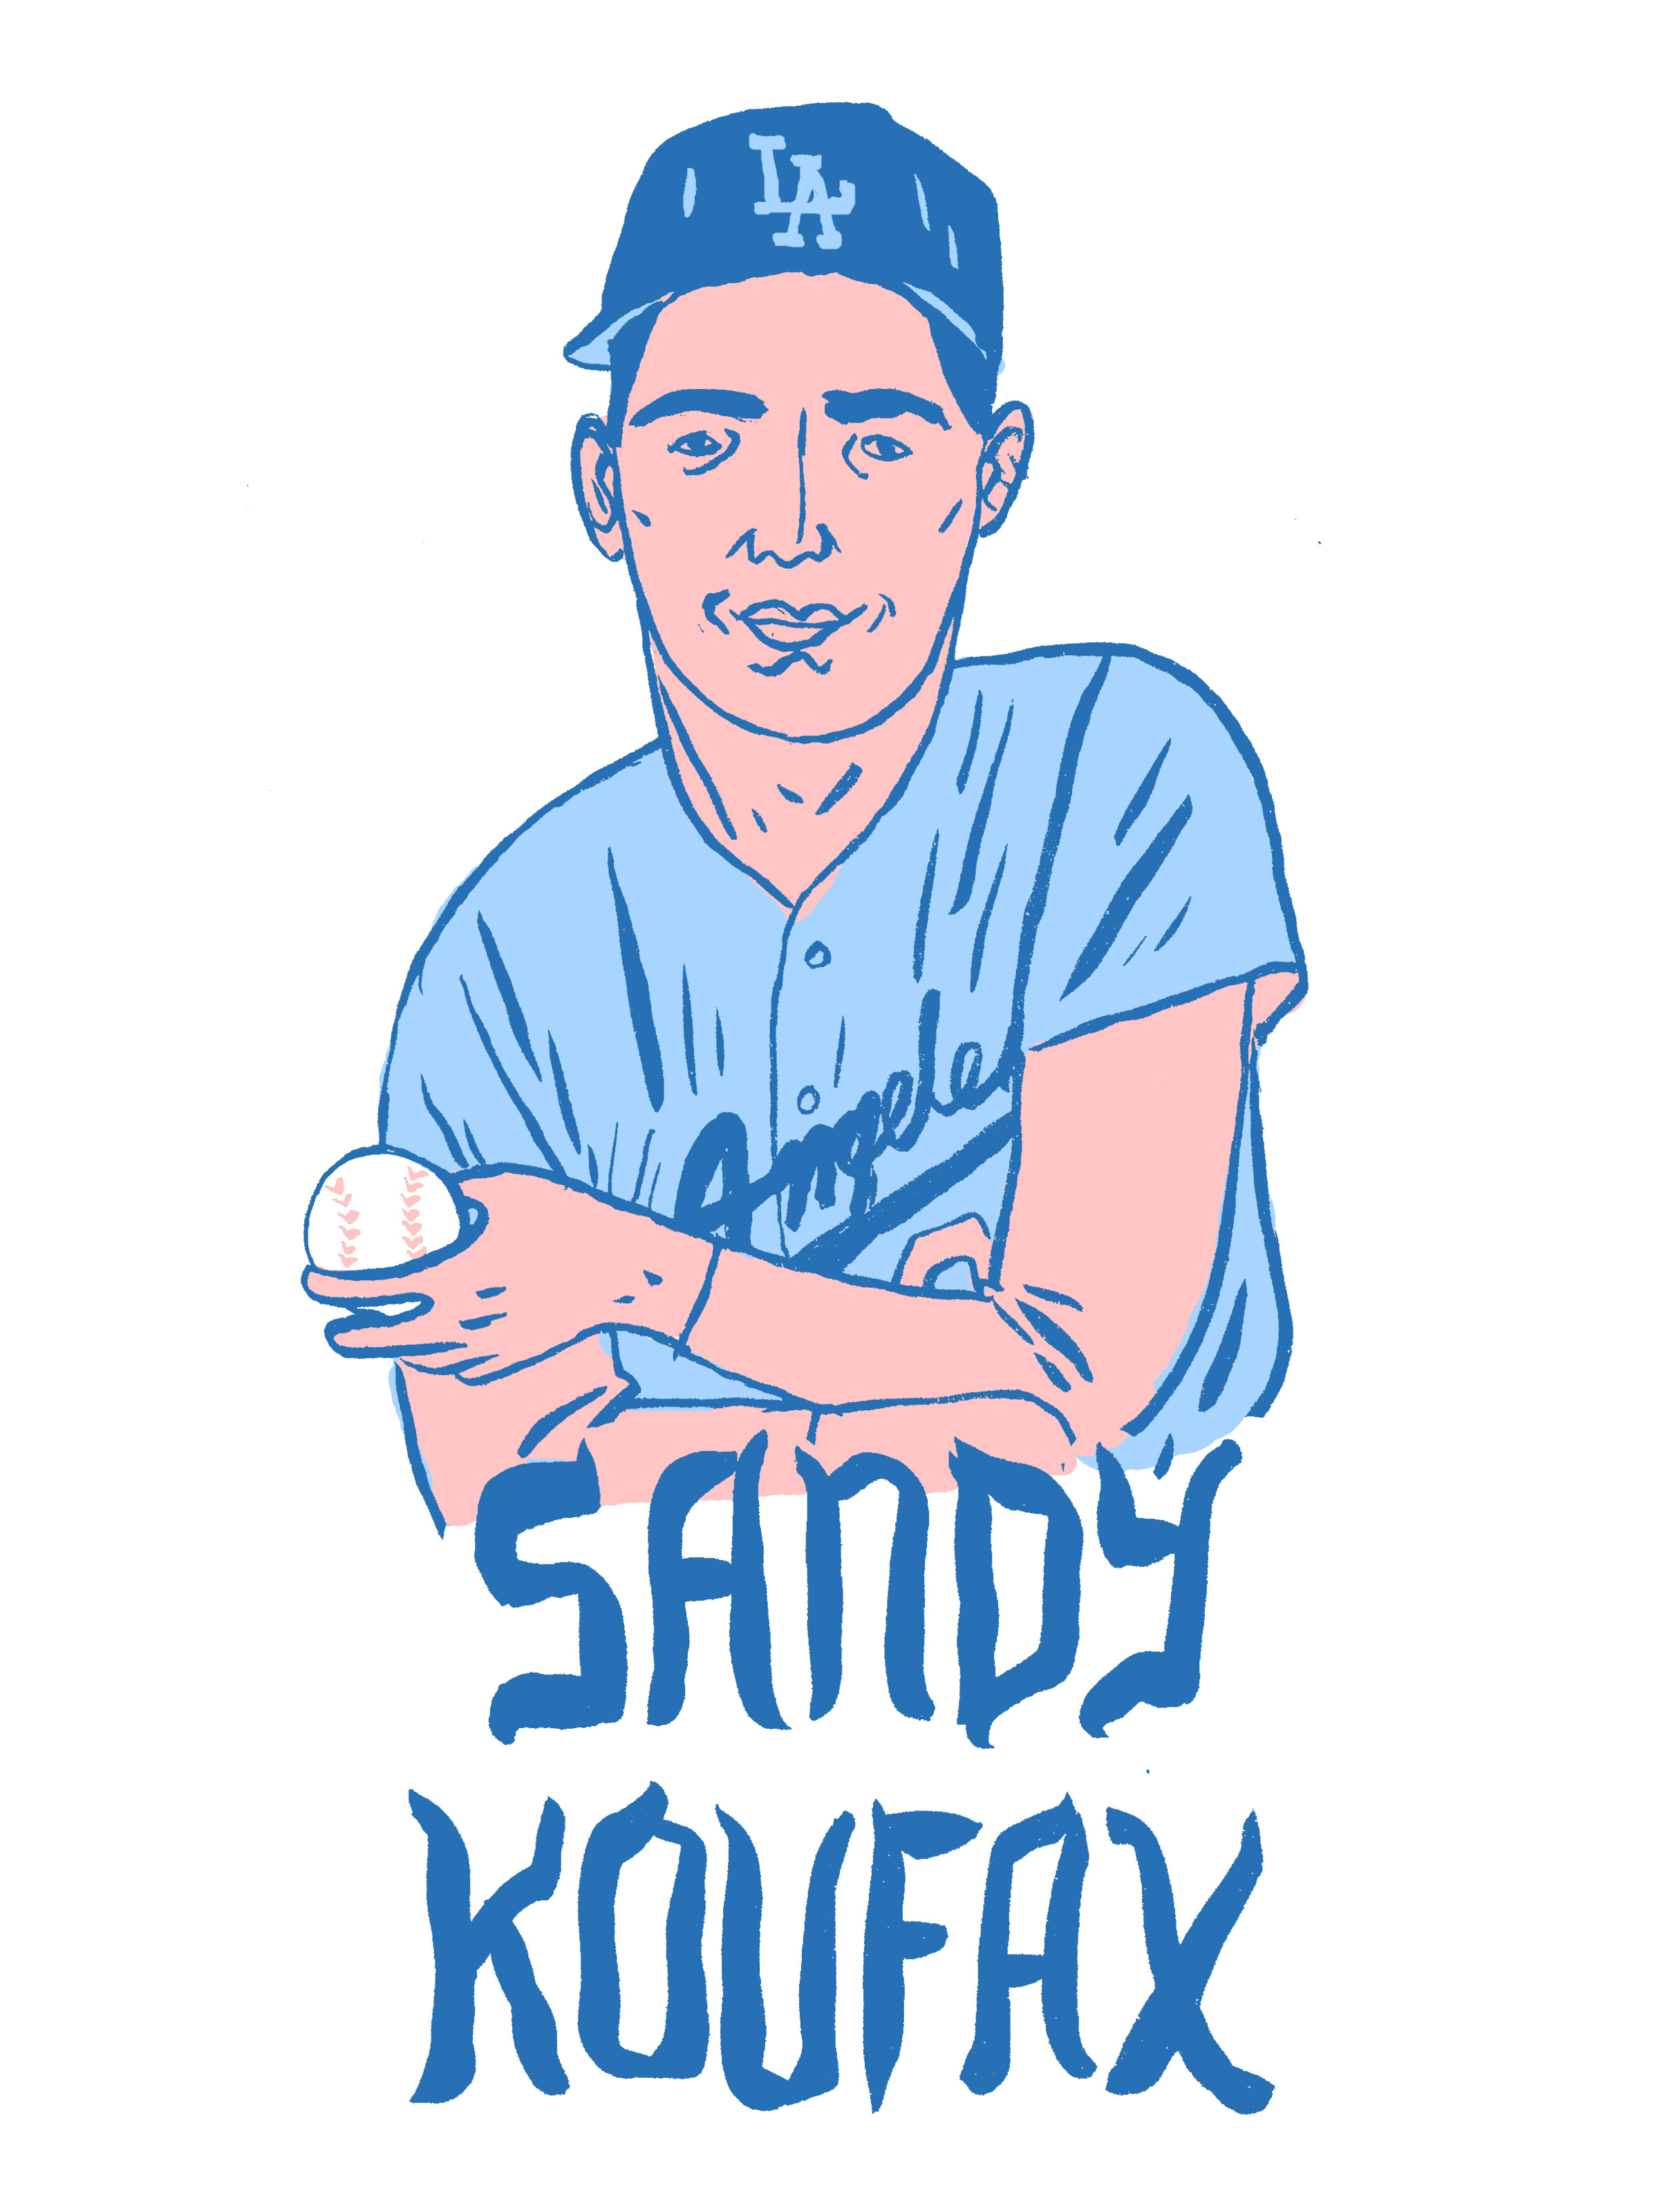 sandy koufax t shirt